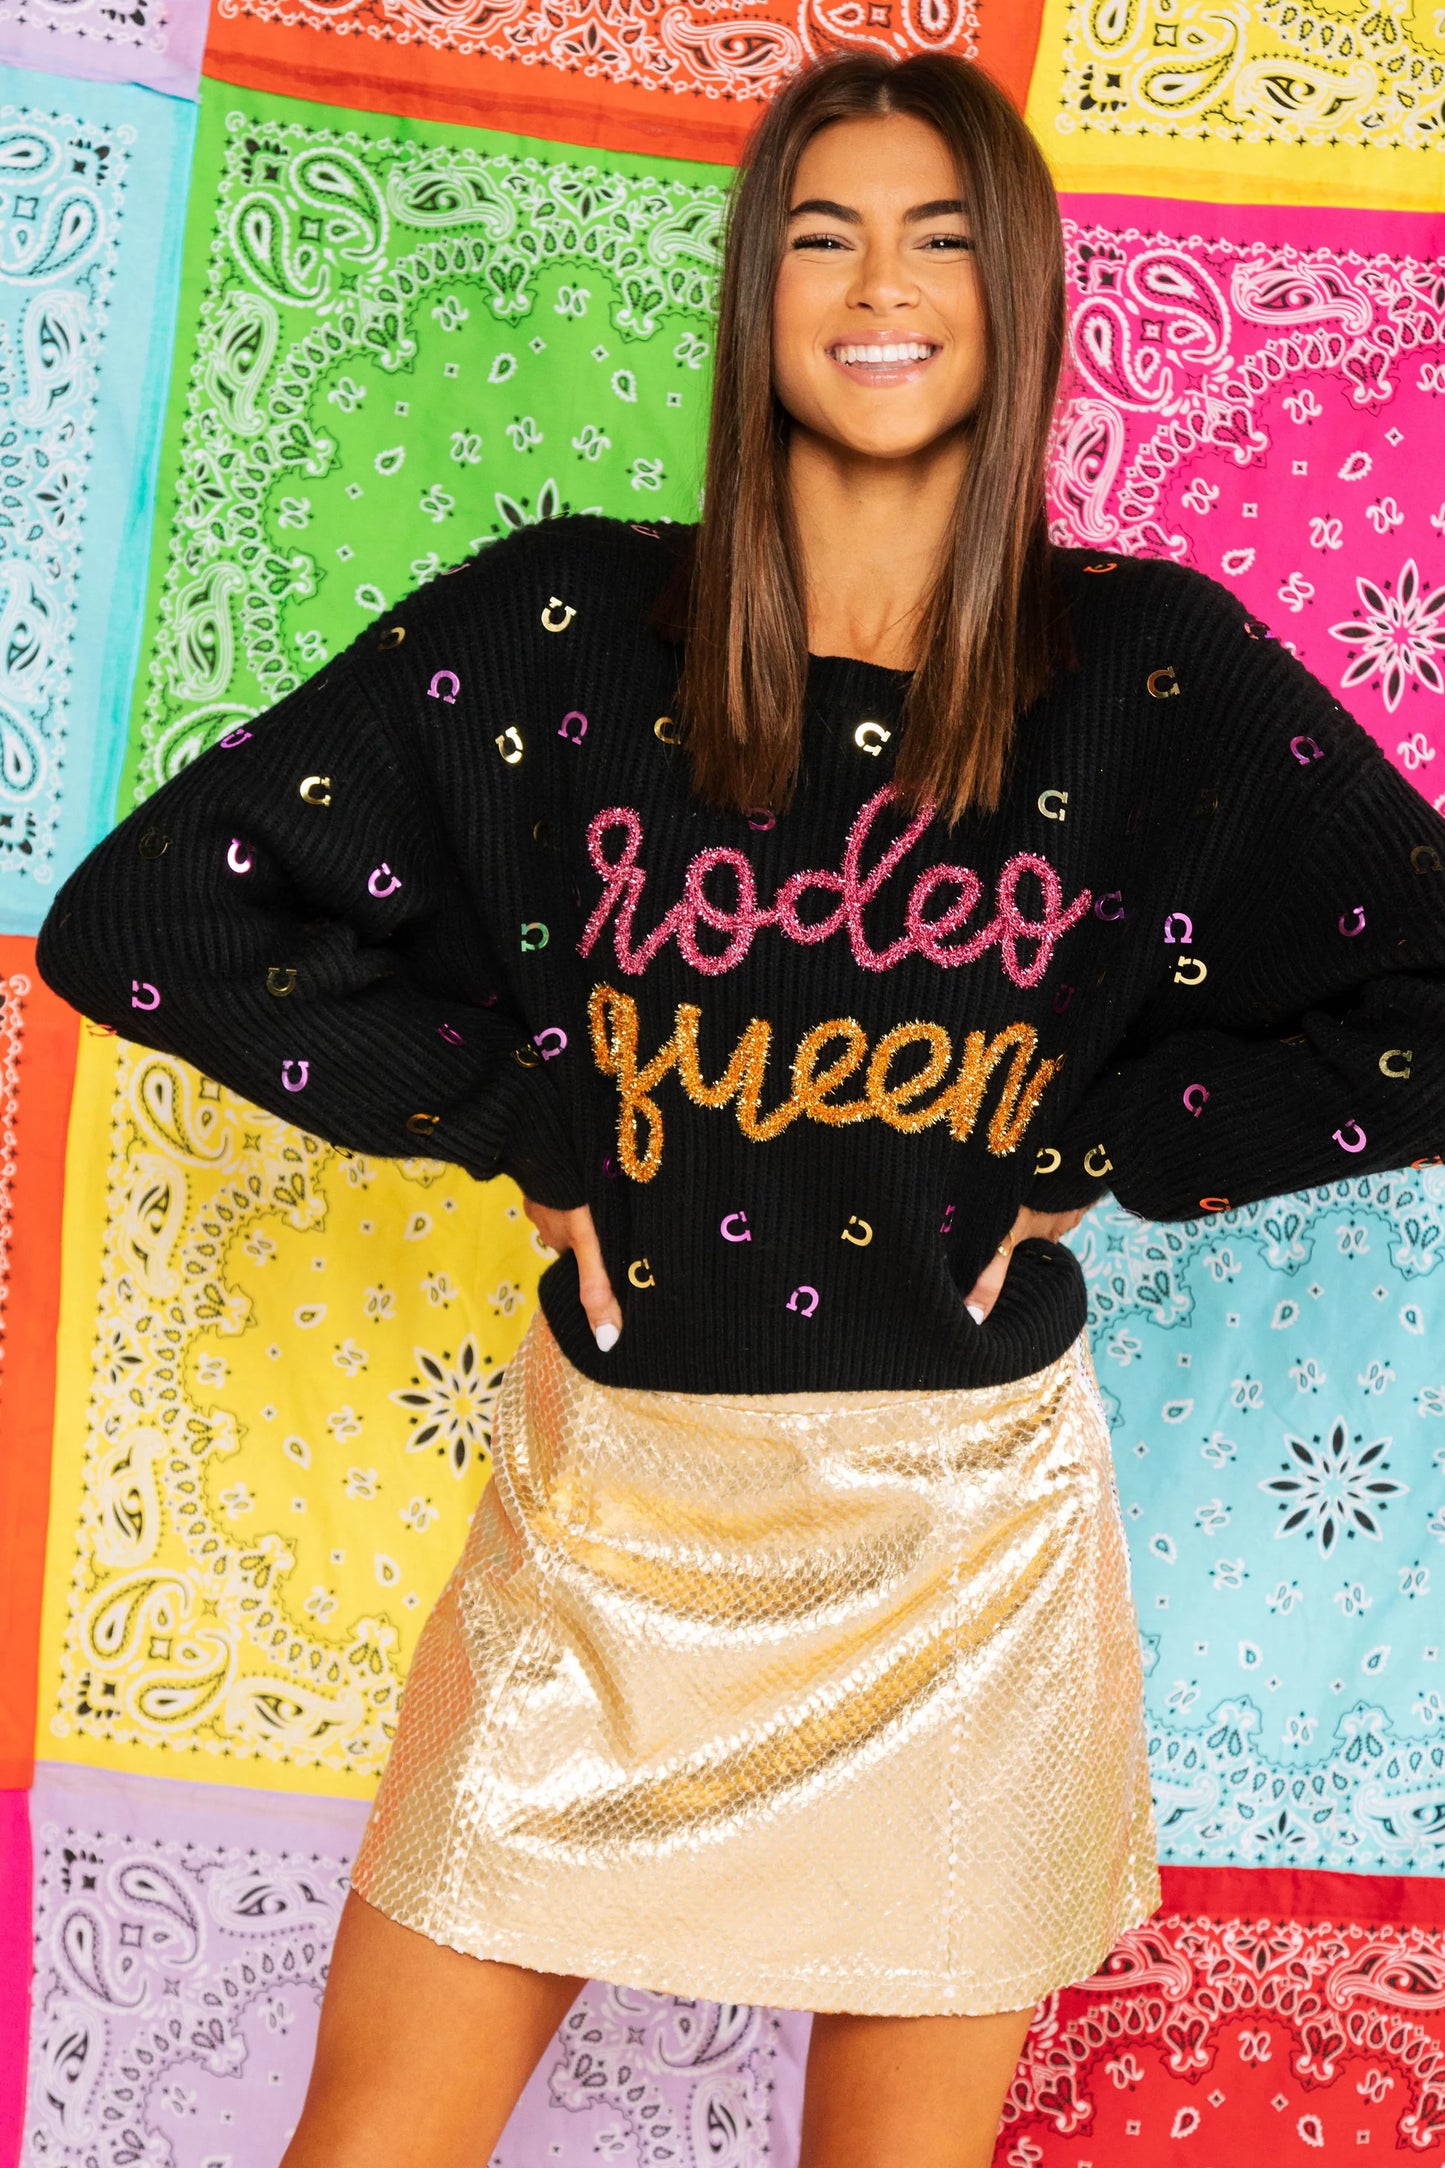 Queen of Sparkles Rodeo Queen Horseshoe Sweater